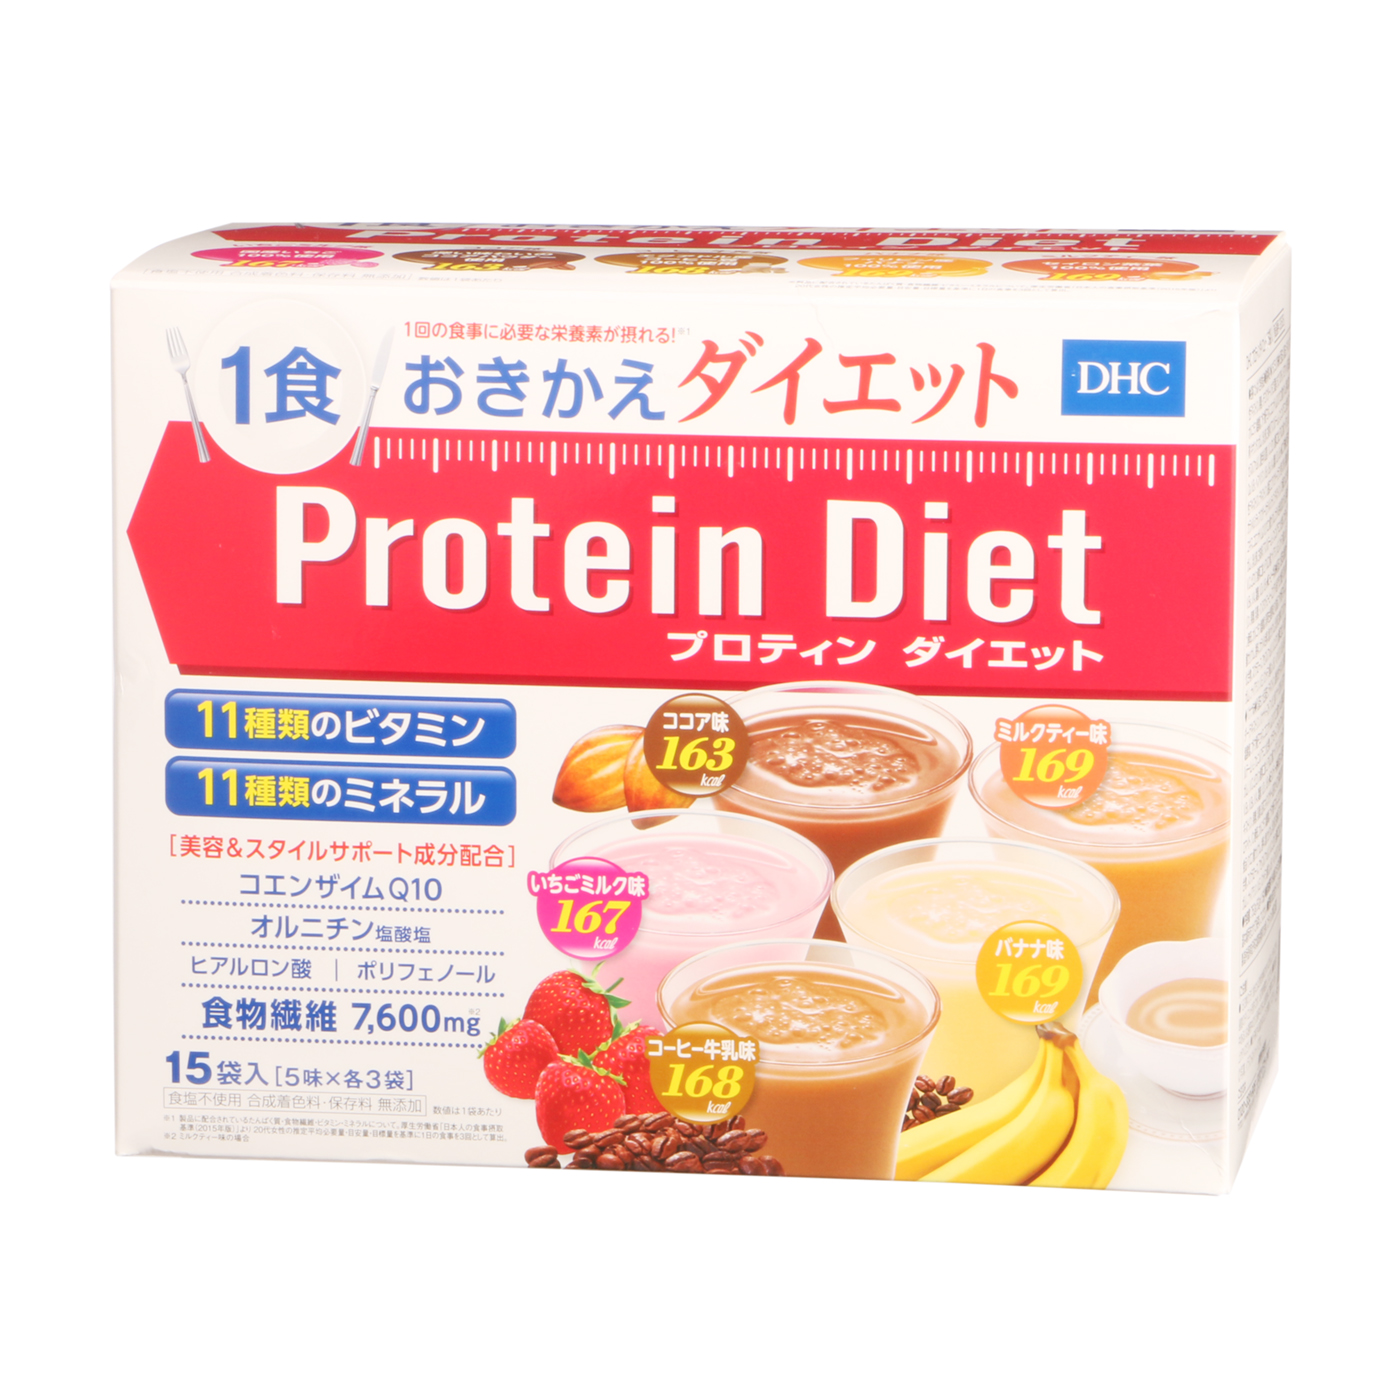 今季ブランド DHC プロテインダイエット50g×15袋入 5味×各3袋 ダイエット プロティンダイエット 食品 Protein Diet  rmladv.com.br